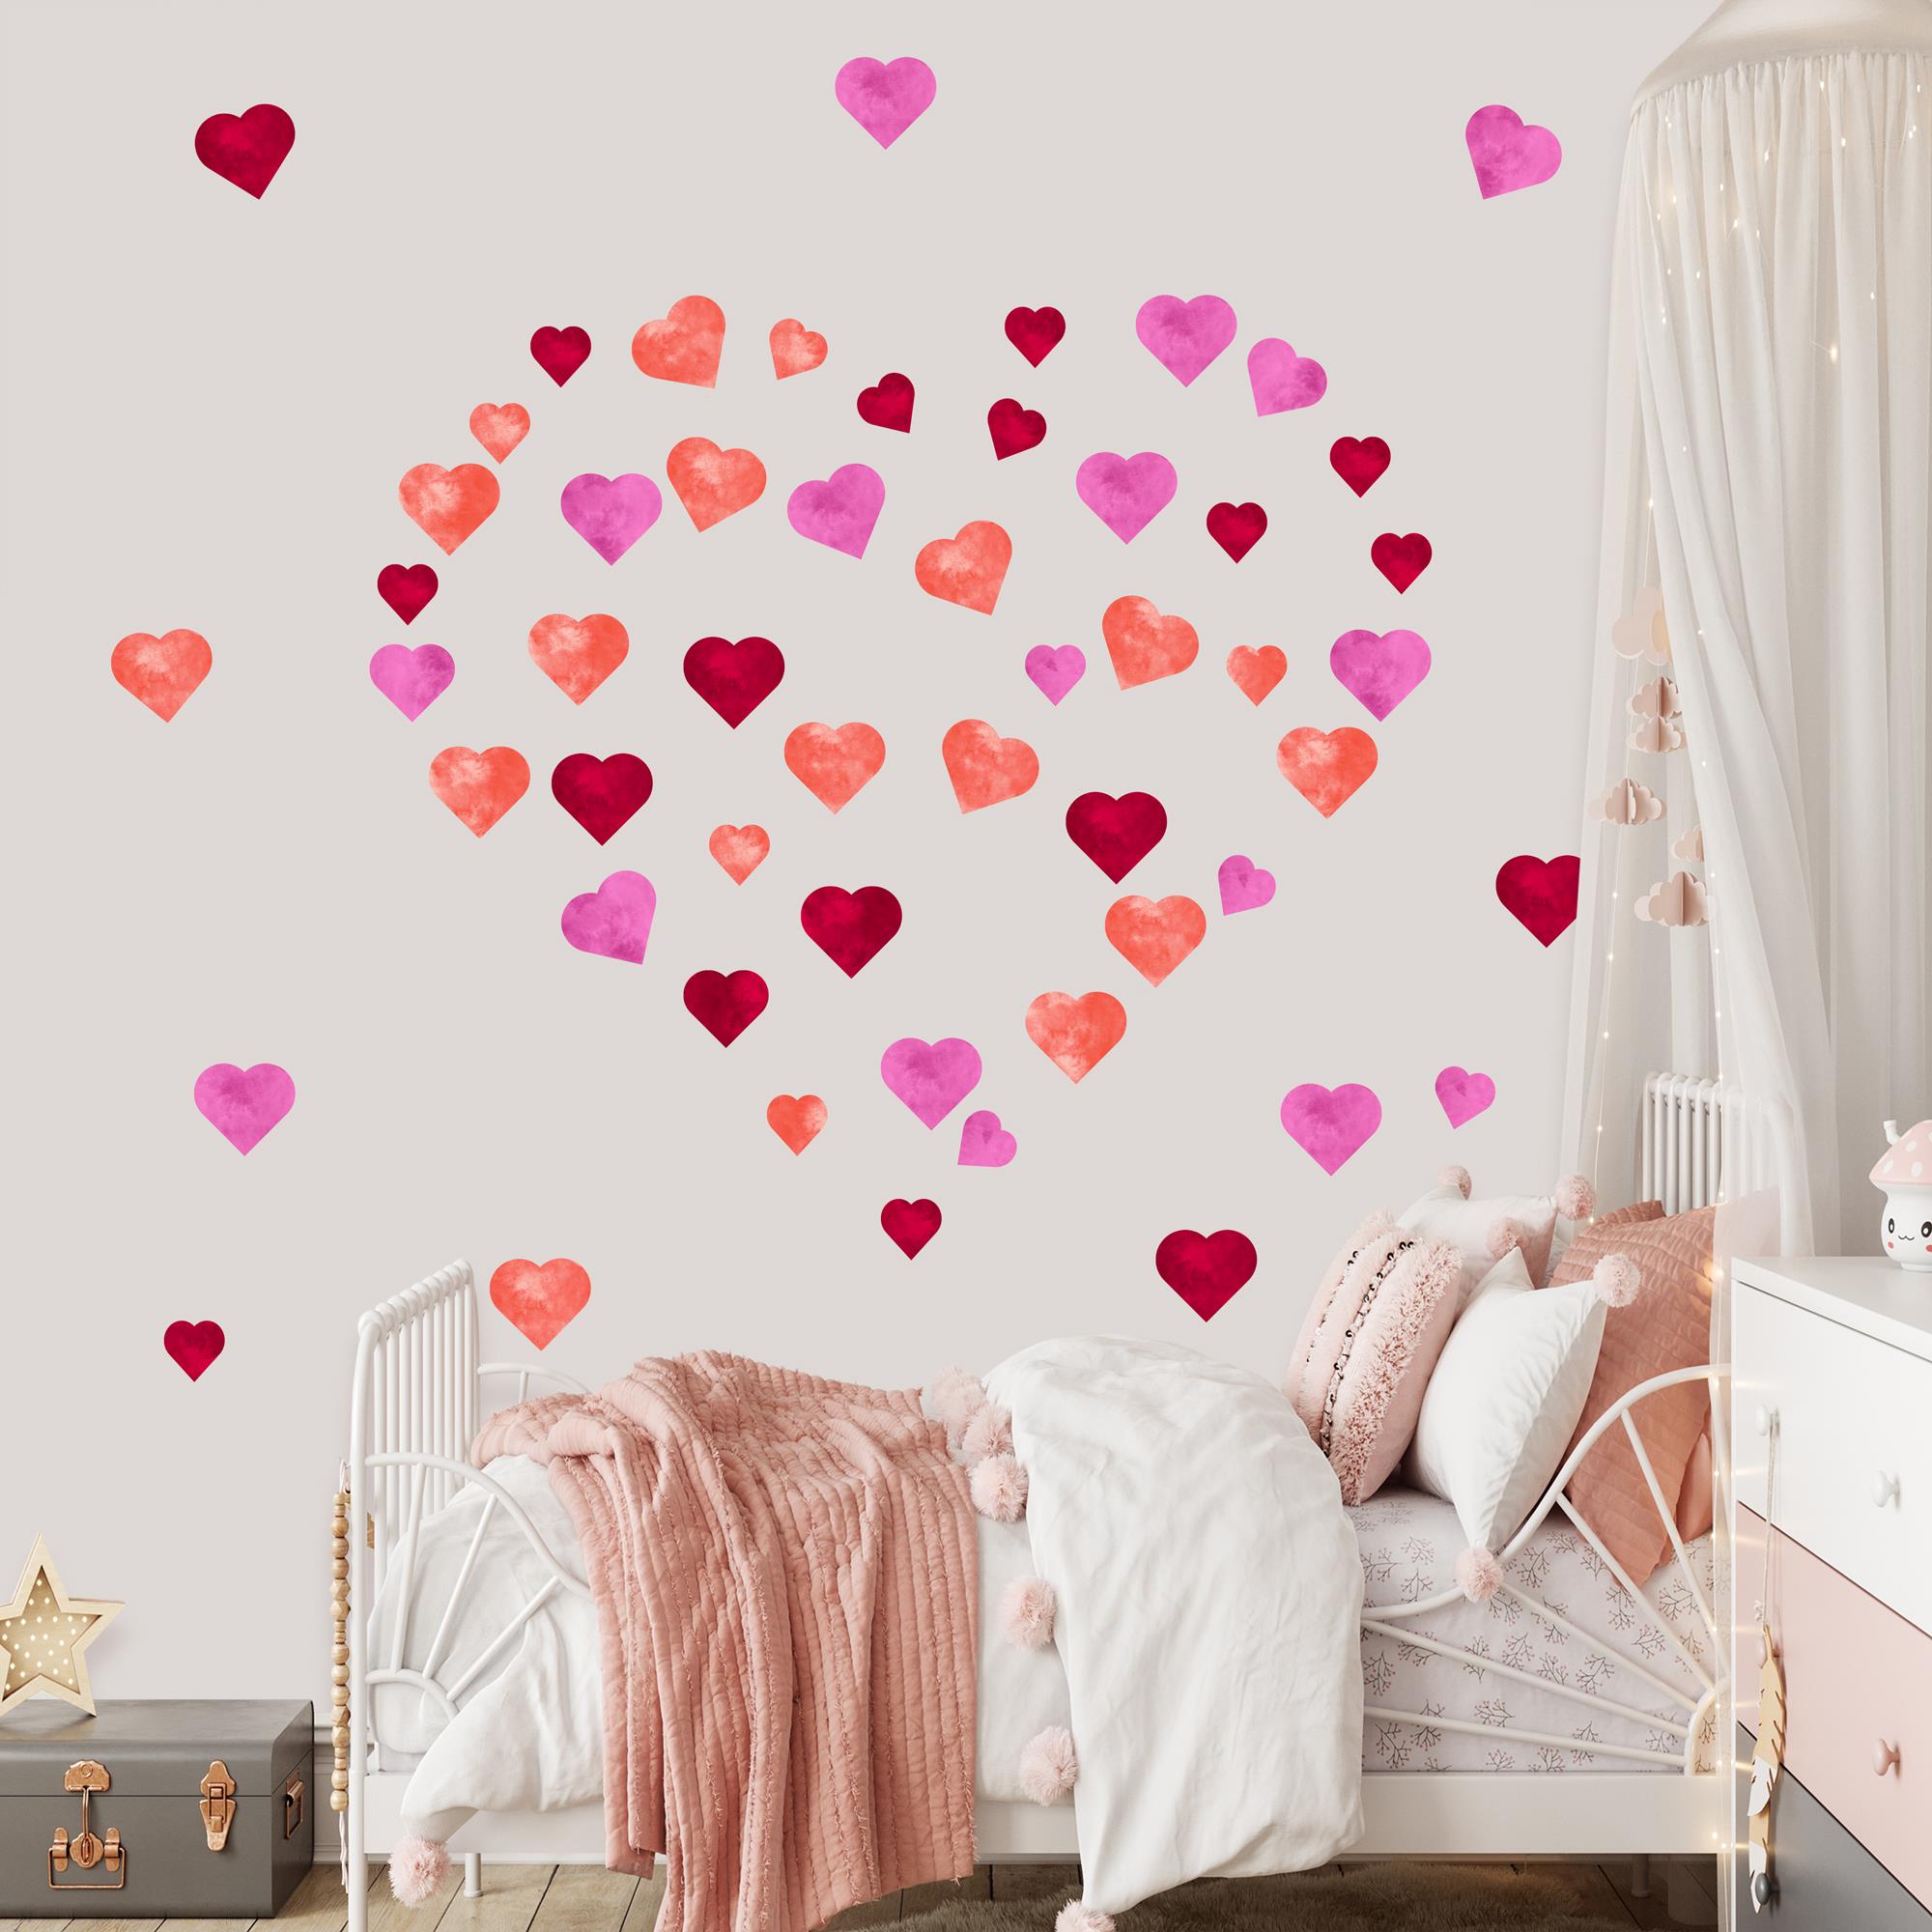 Çocuk Odası Renkli Kalpler Desenli Set (75 parça) Kumaş Duvar Sticker